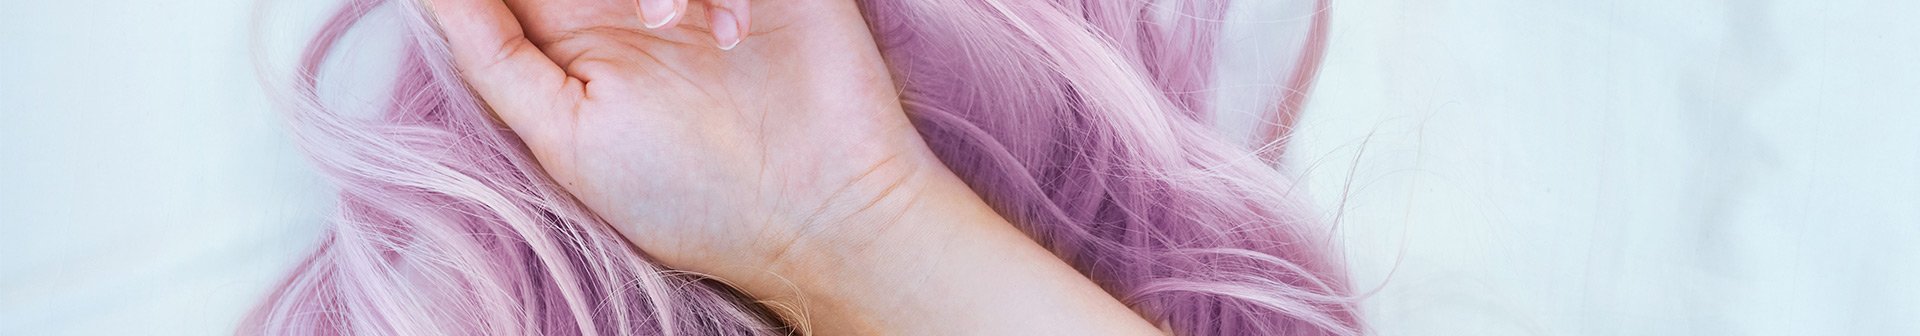 Nahaufnahme einer Hand auf violetten Haaren